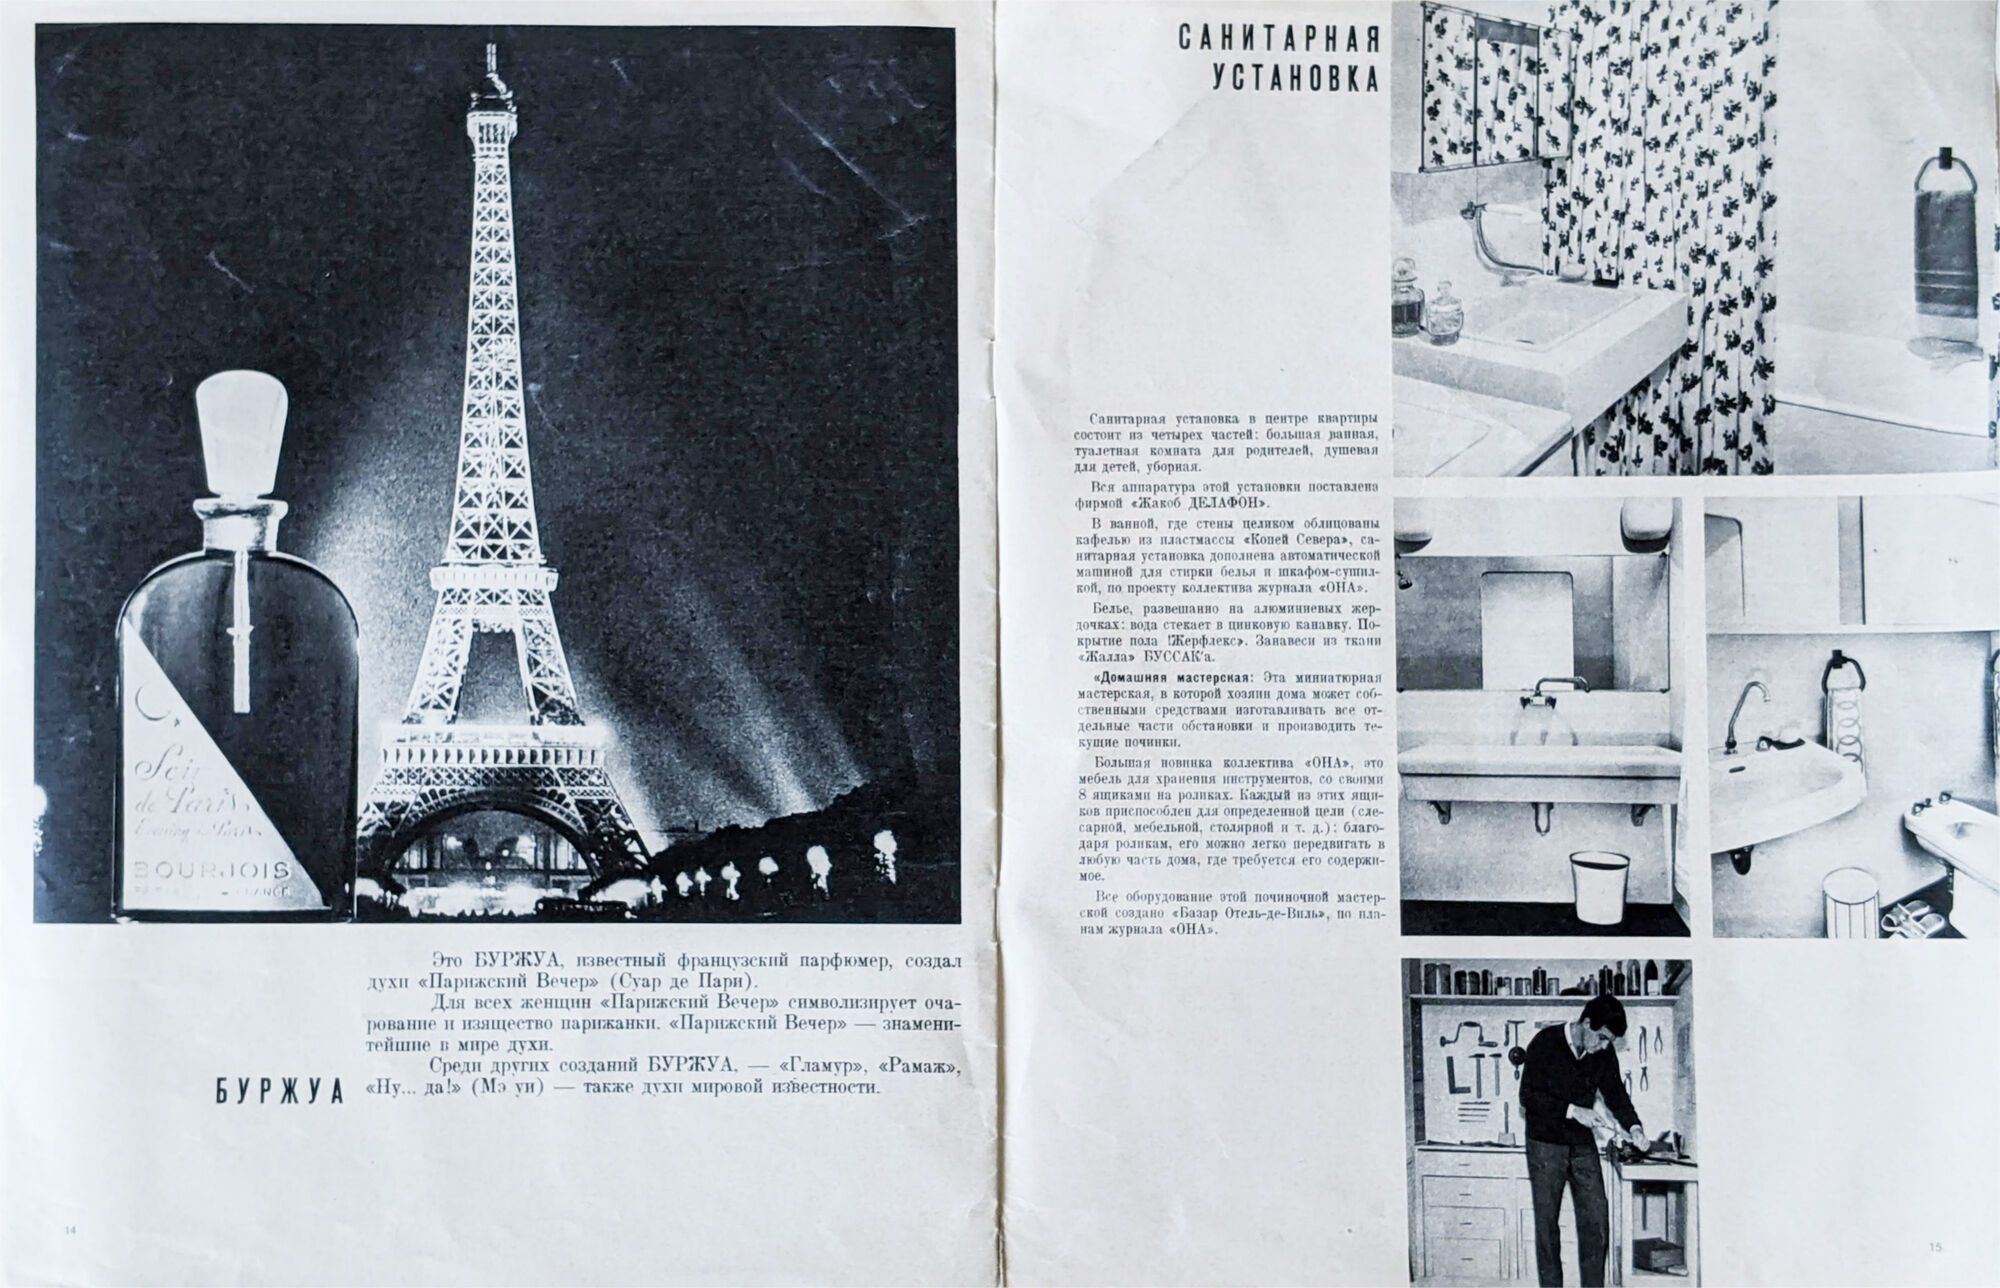 Как выглядел первый французский женский журнал в СССР: фото